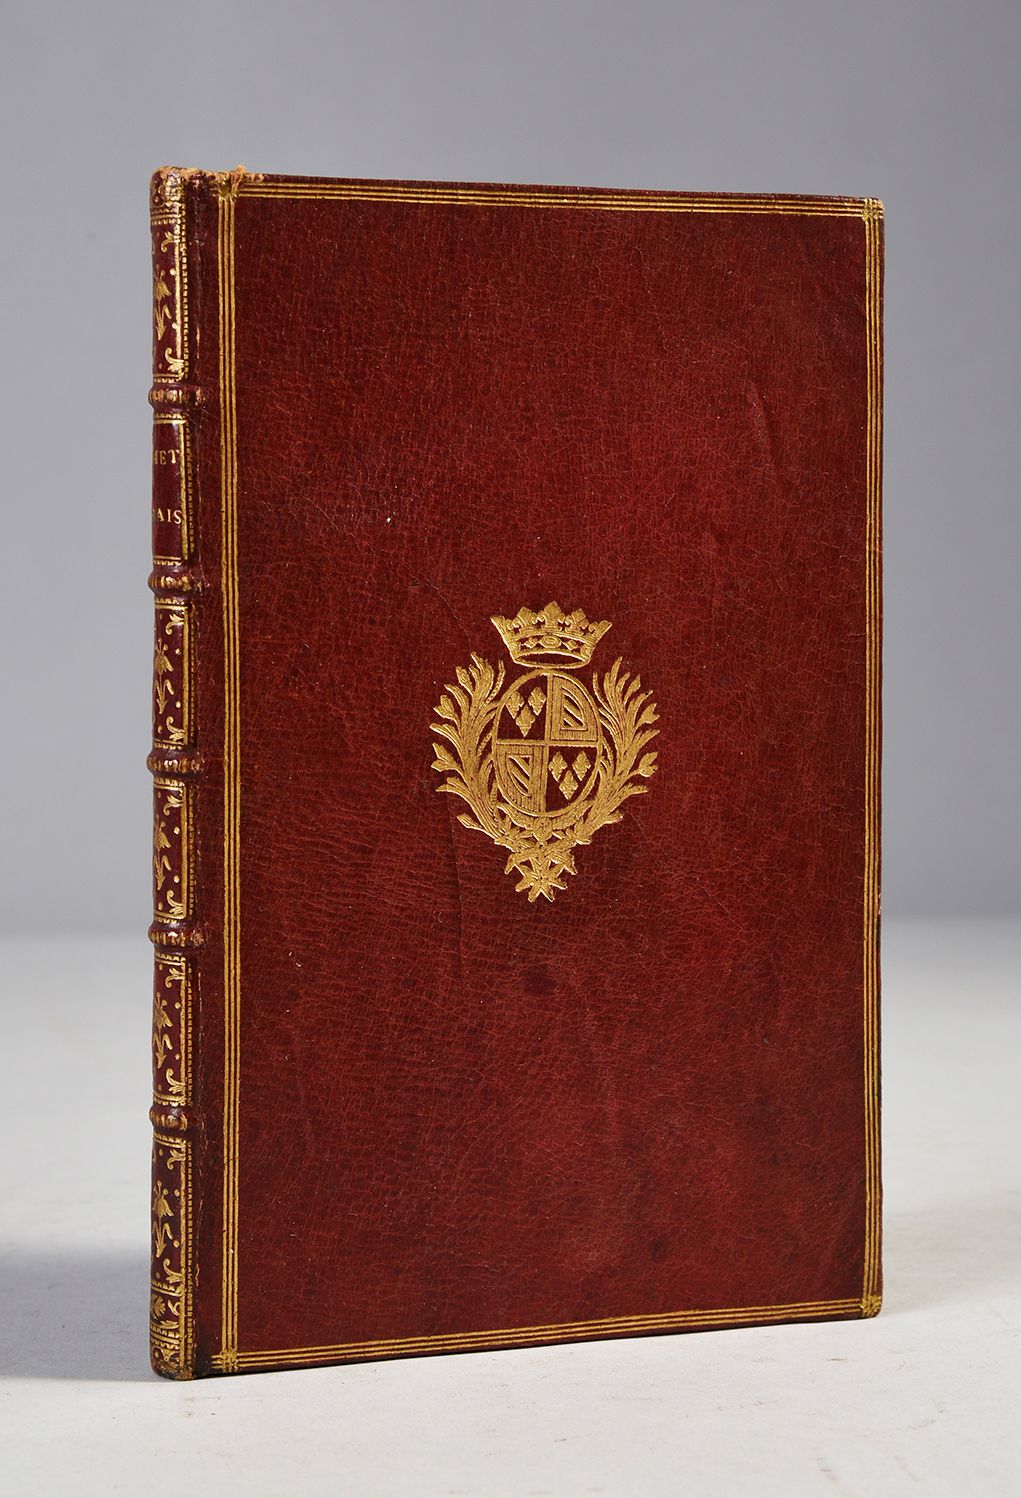 Null 
拉丁语手册 



阐述学习拉丁语的合理方法 



巴黎，米歇尔-艾蒂安-大卫著，1758年。 



8开本，全红摩洛哥，带有勃艮第公爵的徽章。&hellip;